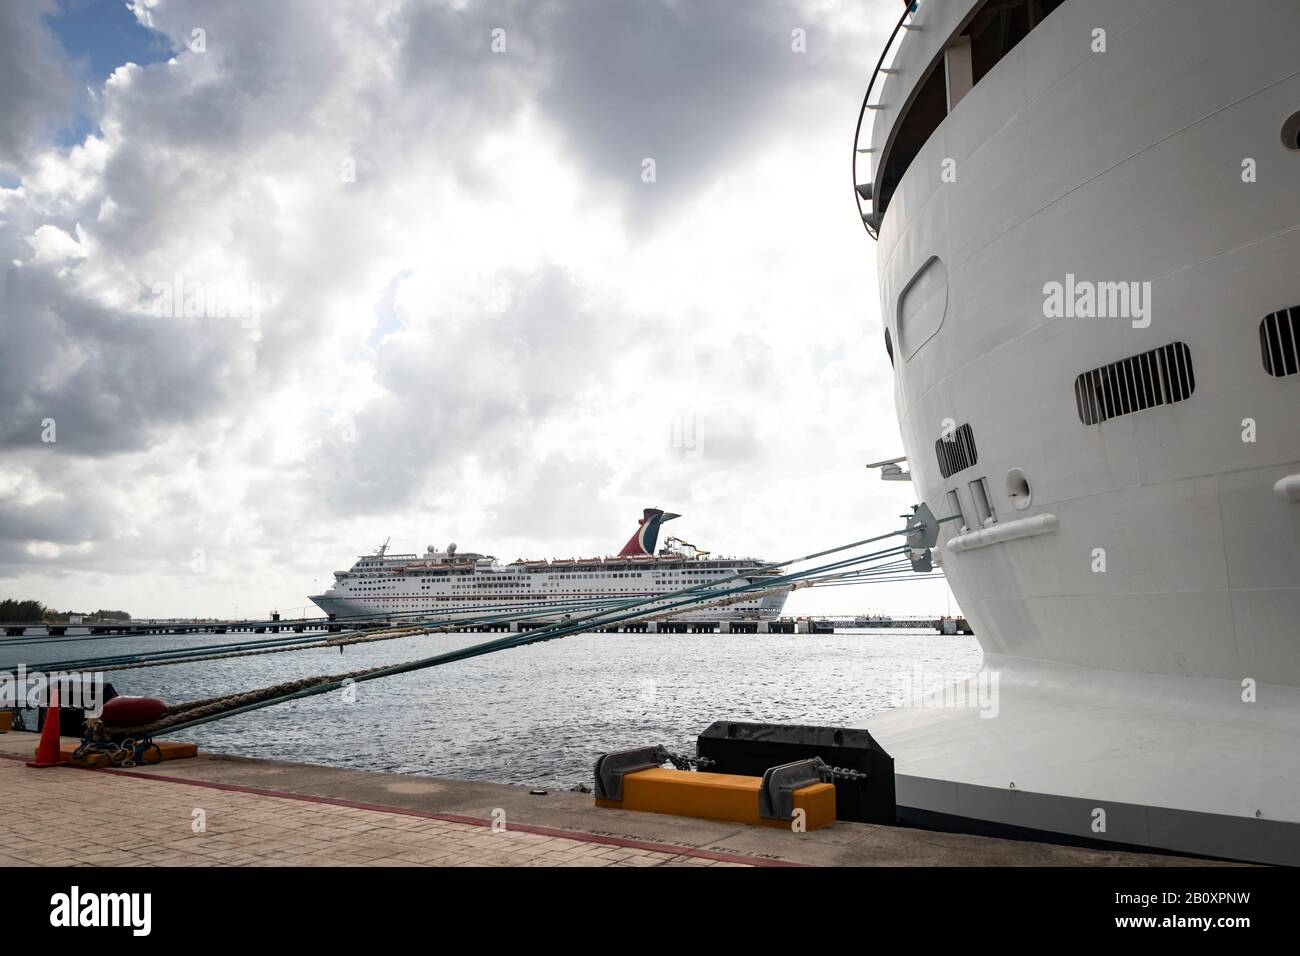 Vista lejana del crucero 'Carnaval Fantasy', en el puerto de Cozumel bajo el cielo nublado Foto de stock